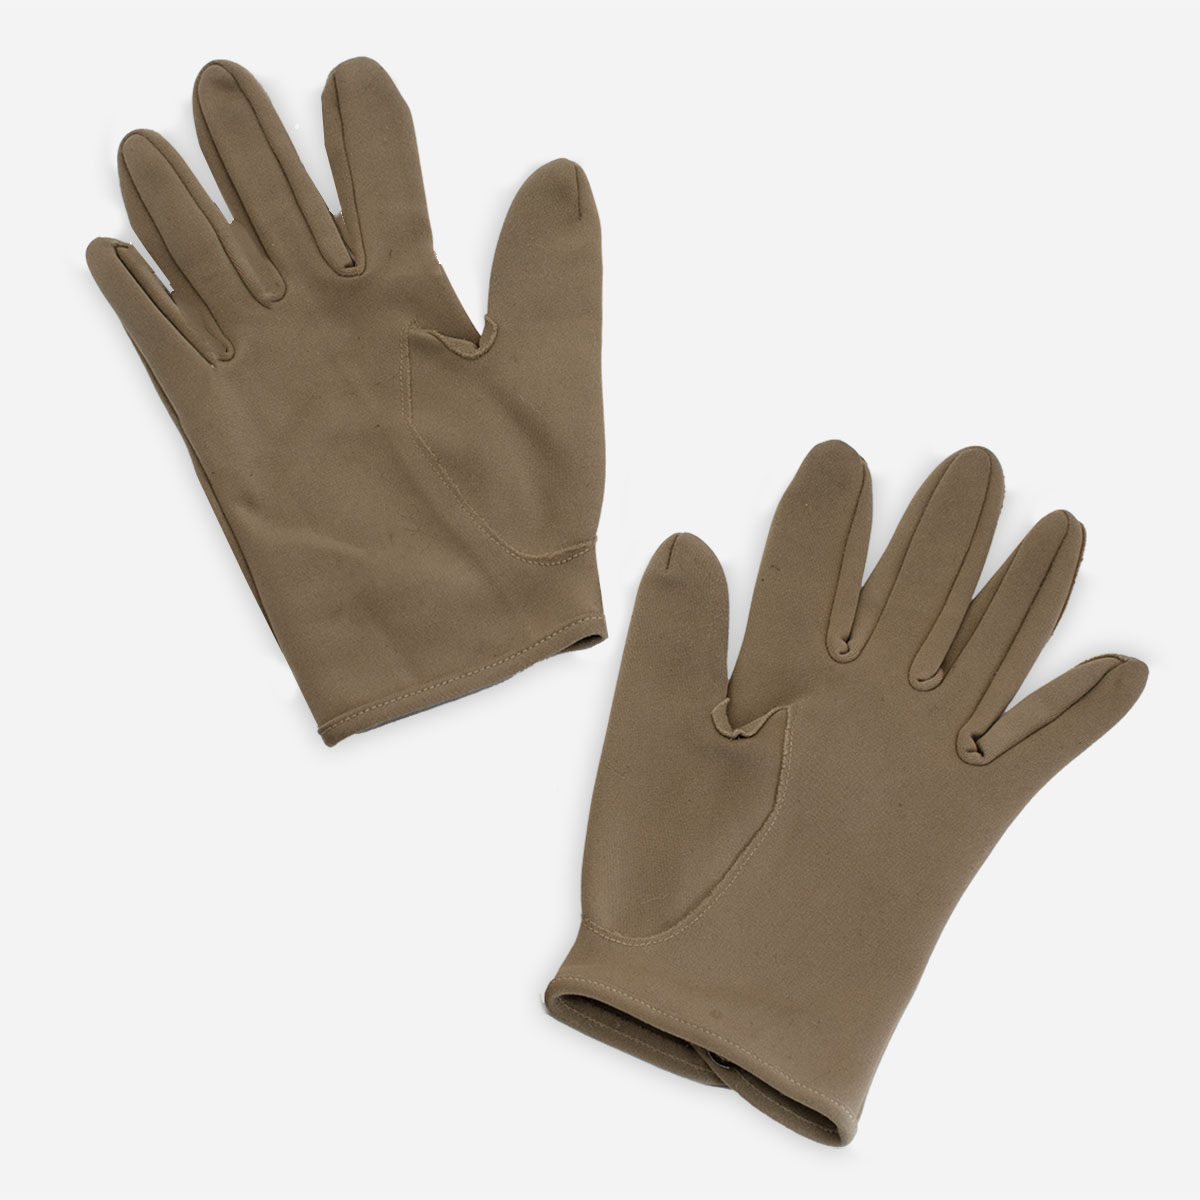 Vintage tan winter gloves, shortie gloves